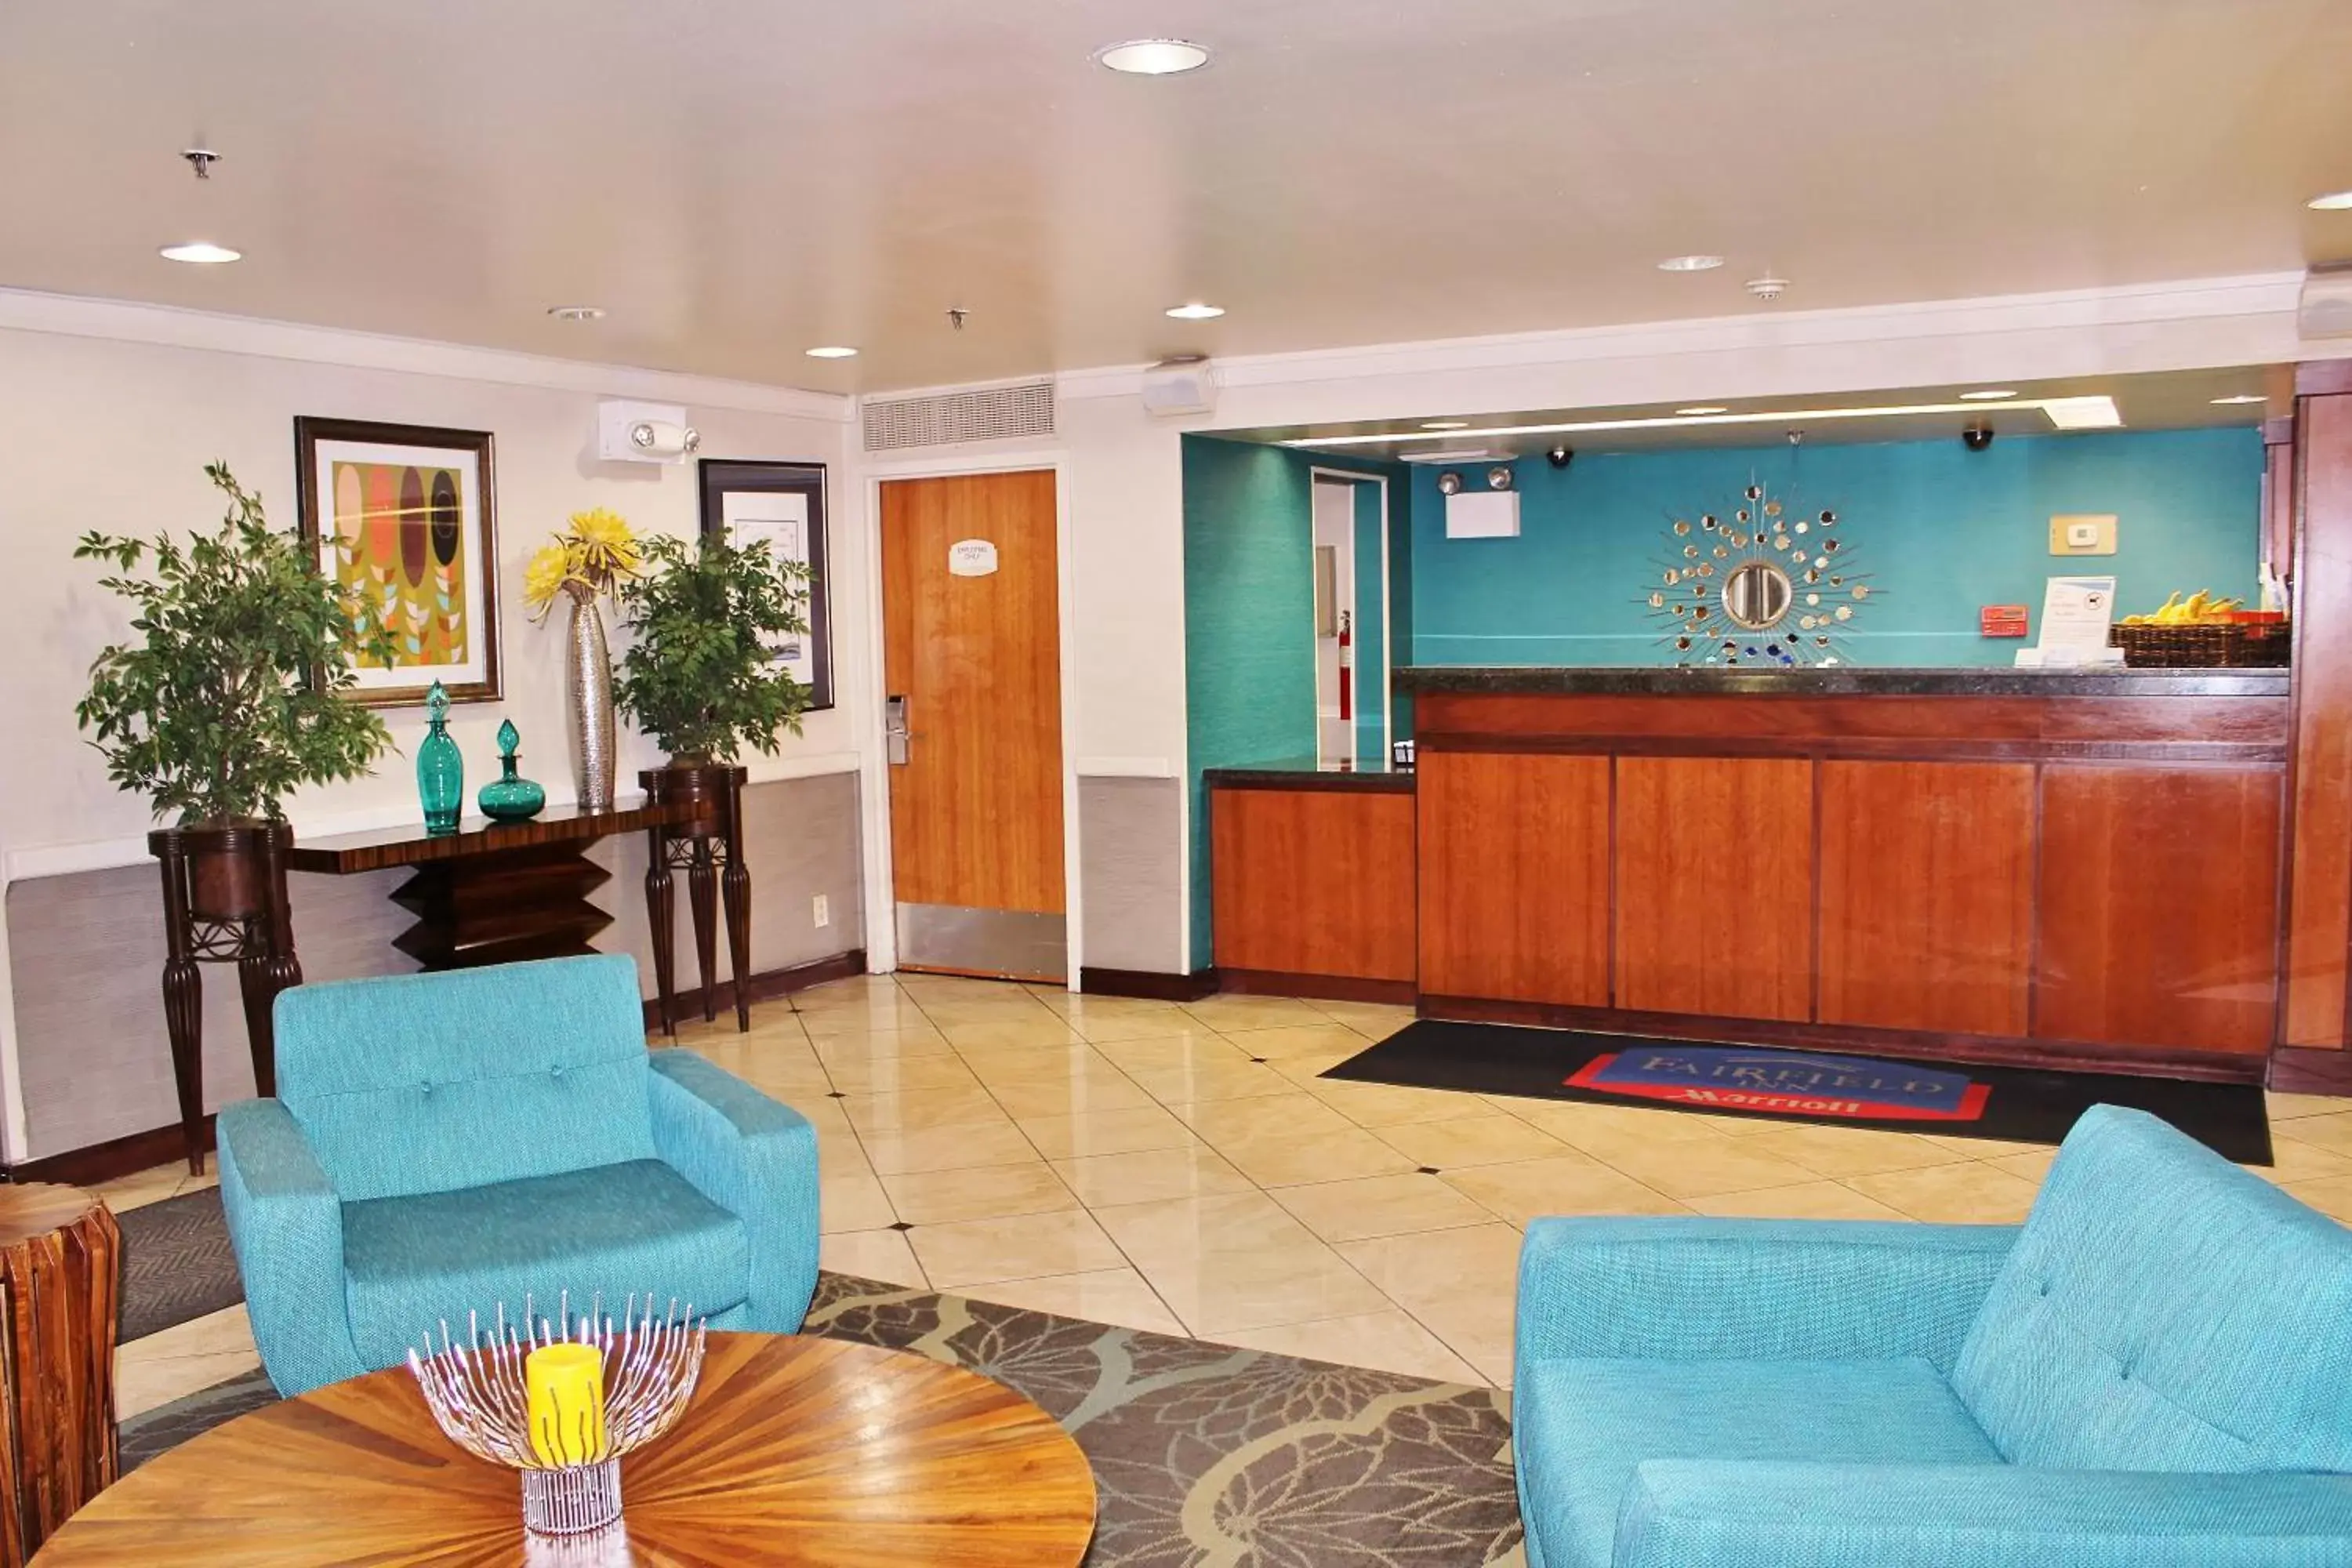 Lobby or reception, Lobby/Reception in Baymont by Wyndham Flagstaff